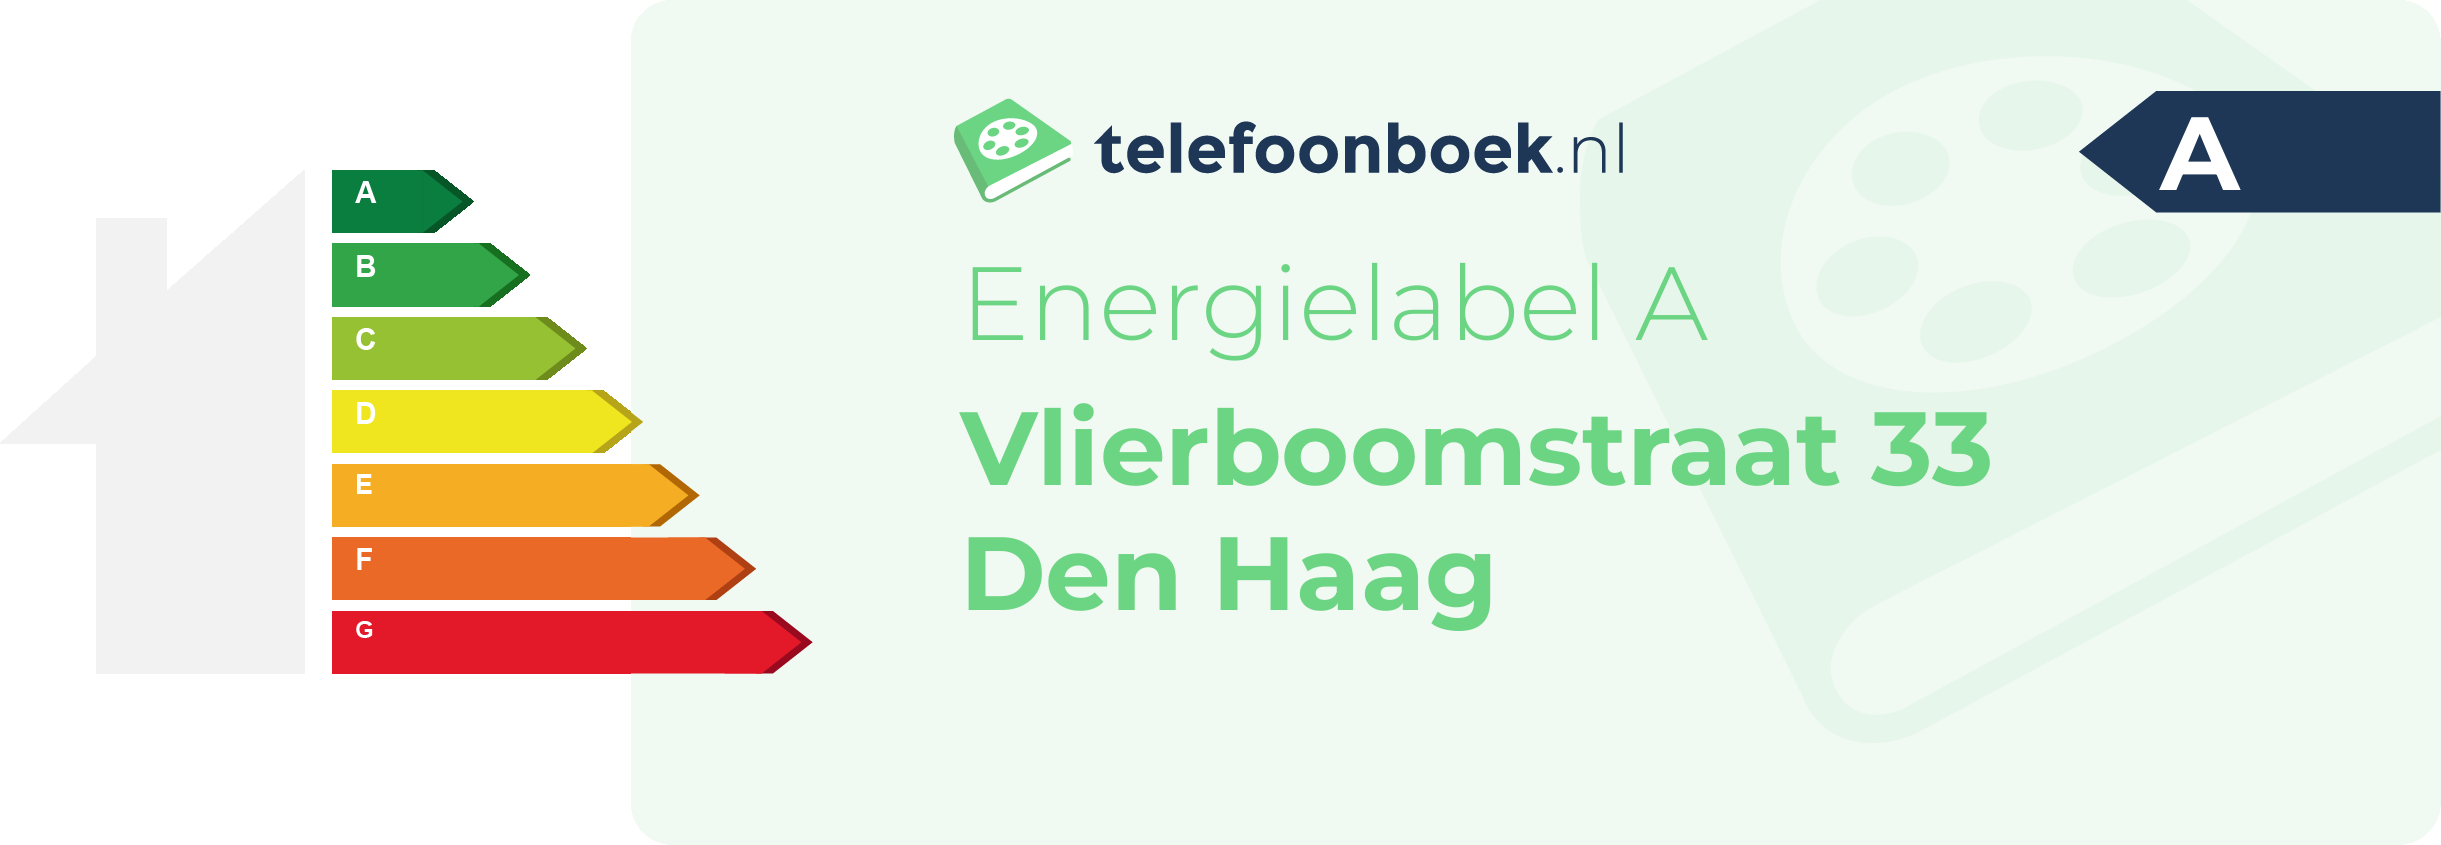 Energielabel Vlierboomstraat 33 Den Haag